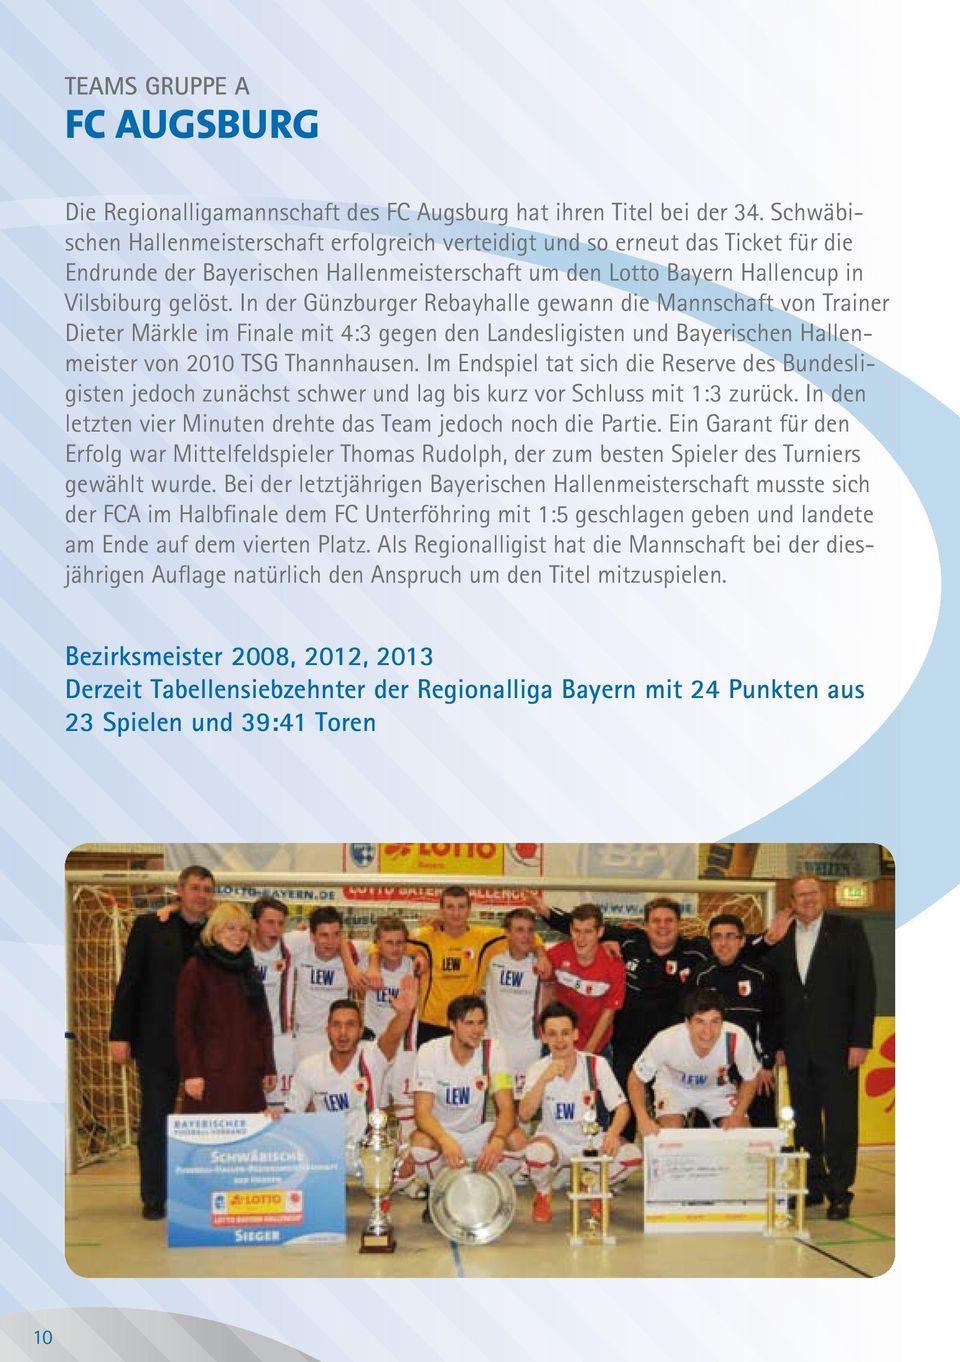 In der Günzburger Rebayhalle gewann die Mannschaft von Trainer Dieter Märkle im Finale mit 4:3 gegen den Landesligisten und Bayerischen Hallenmeister von 2010 TSG Thannhausen.